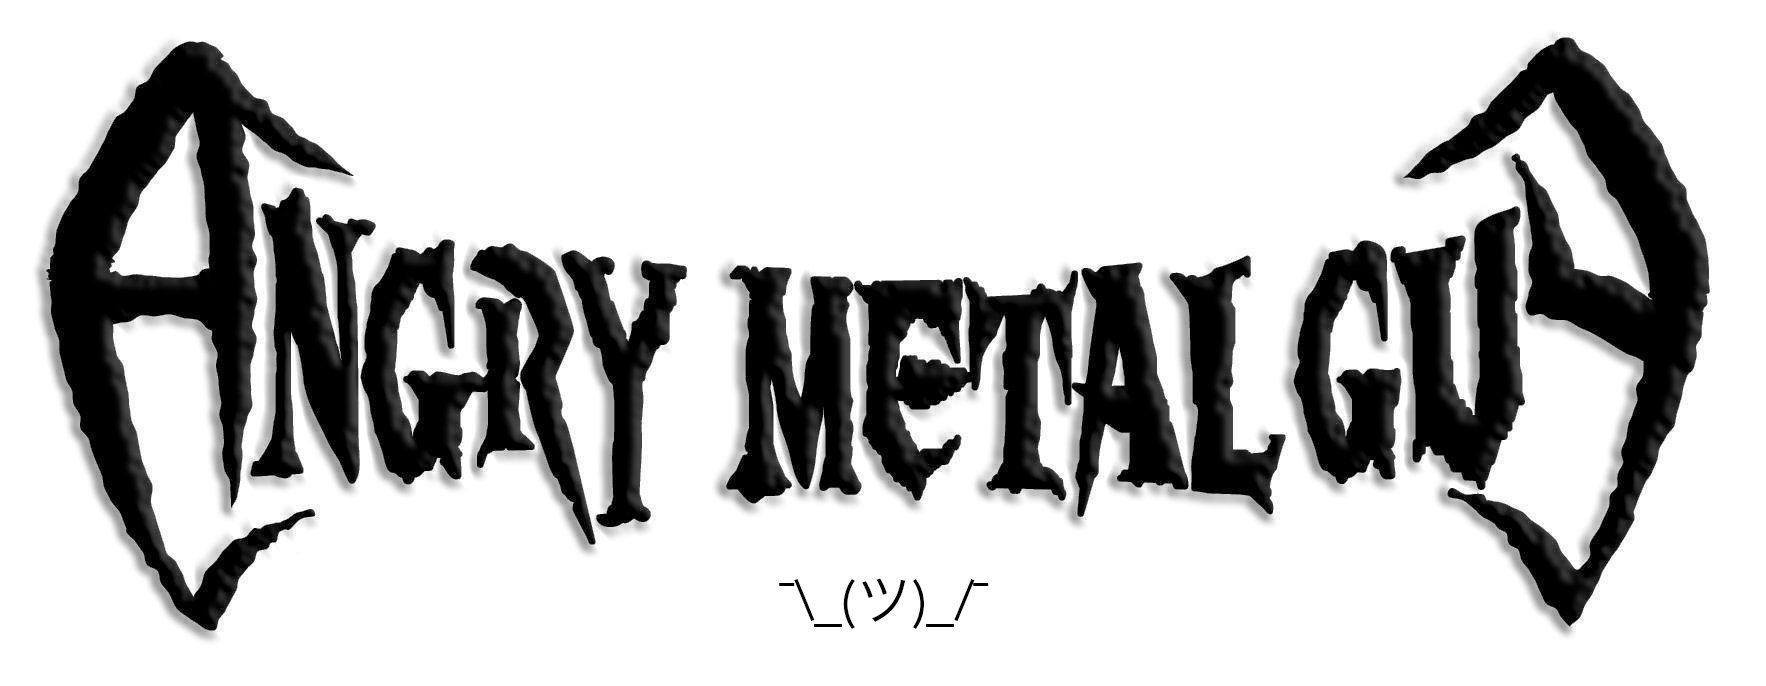 Angry Metal Guy